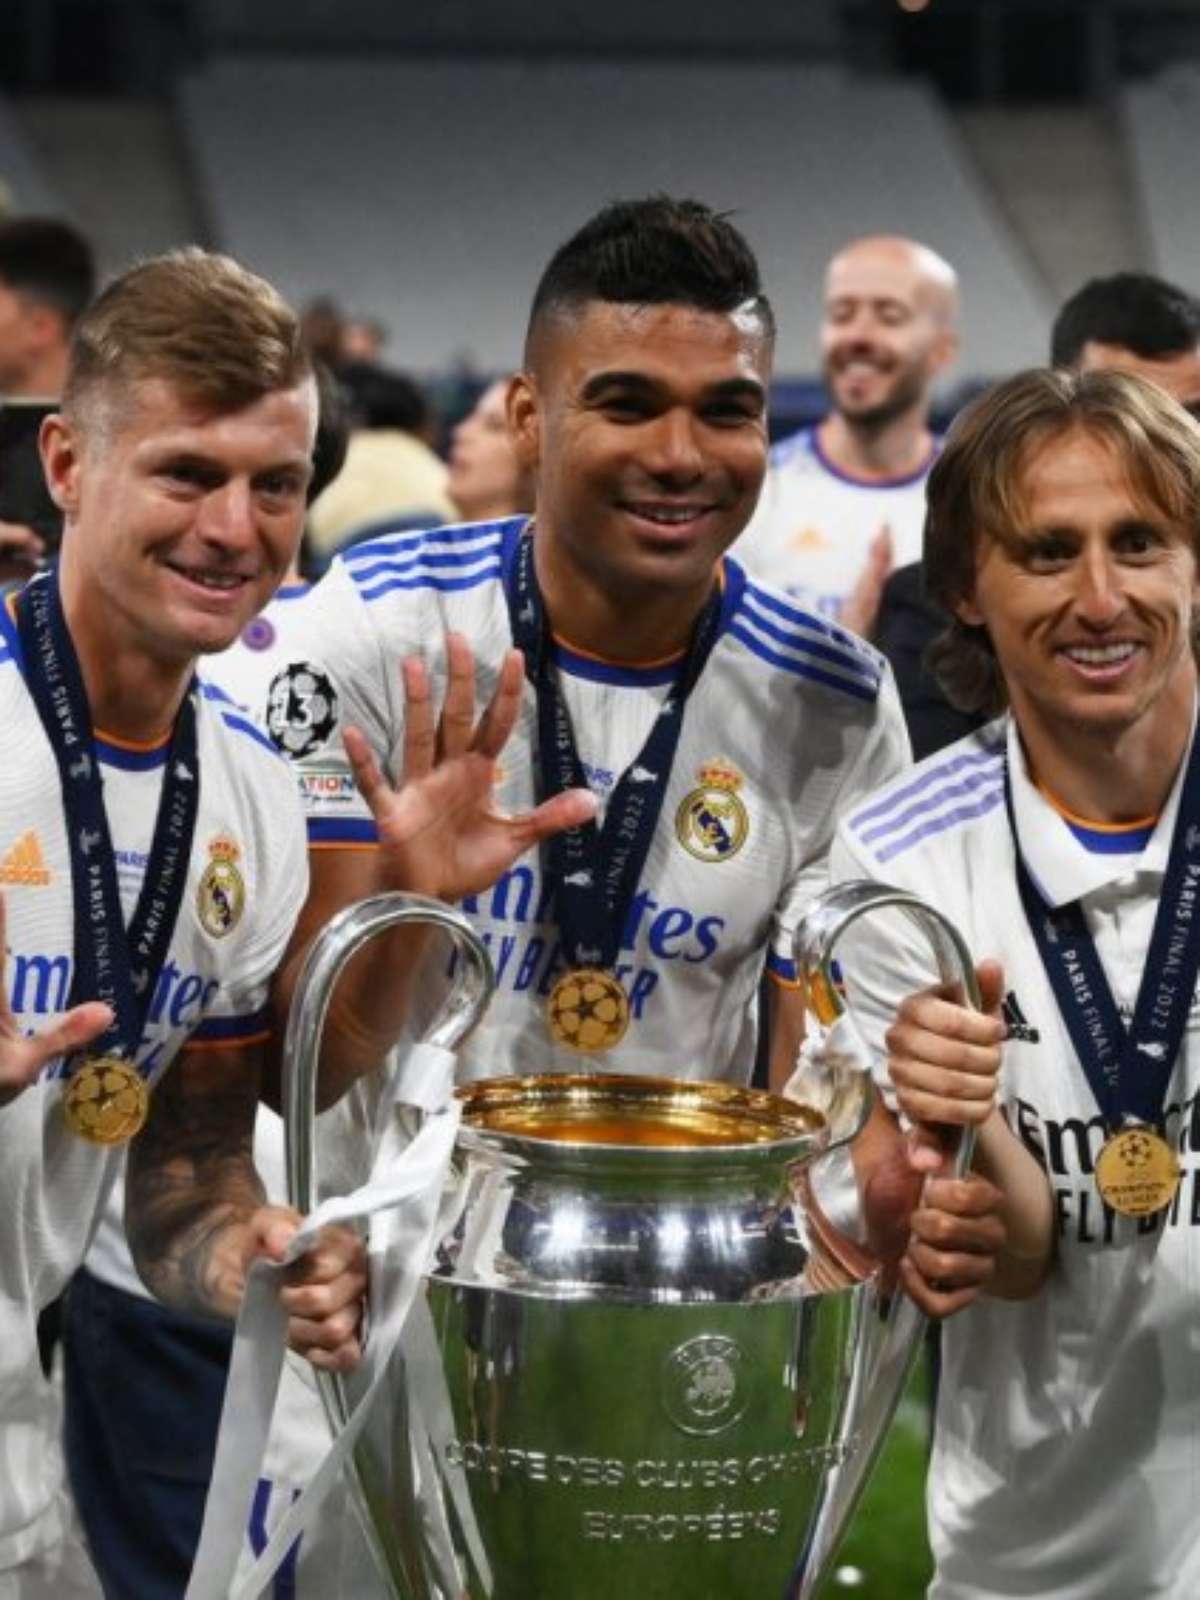 Real Madrid na Champions League: desempenho e títulos em todas as